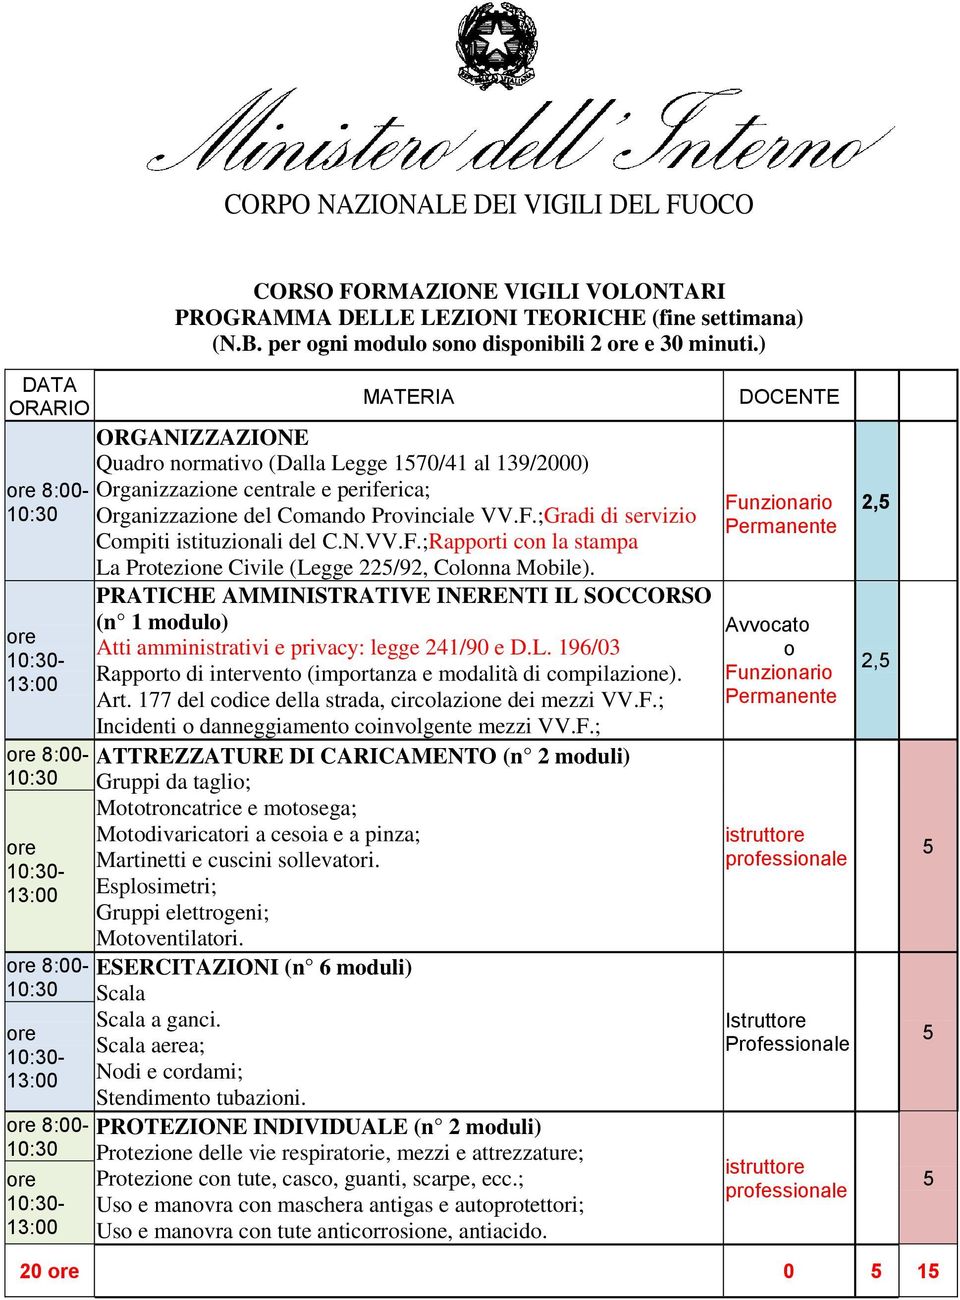 ;Gradi di servizio Compiti istituzionali del C.N.VV.F.;Rapporti con la stampa La Protezione Civile (Legge 22/92, Colonna Mobile).